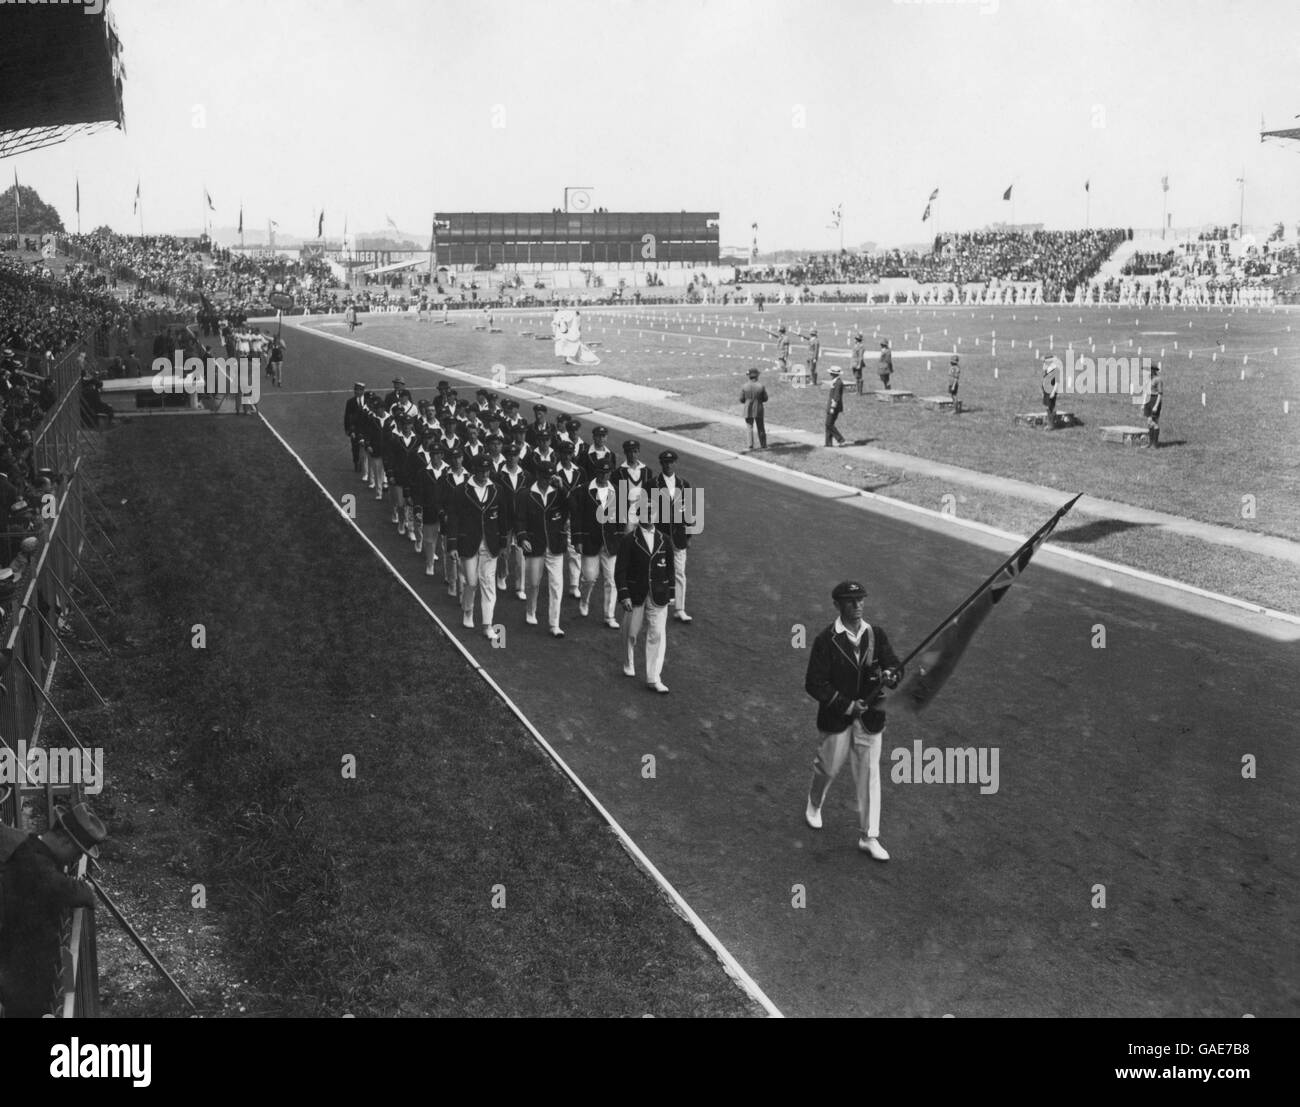 Olympische Spiele 1924 In Paris - Eröffnungszeremonie - Colombes Stadium. Die Teilnehmer marschierten während der Eröffnungsfeier der Olympischen Spiele in Paris. Stockfoto